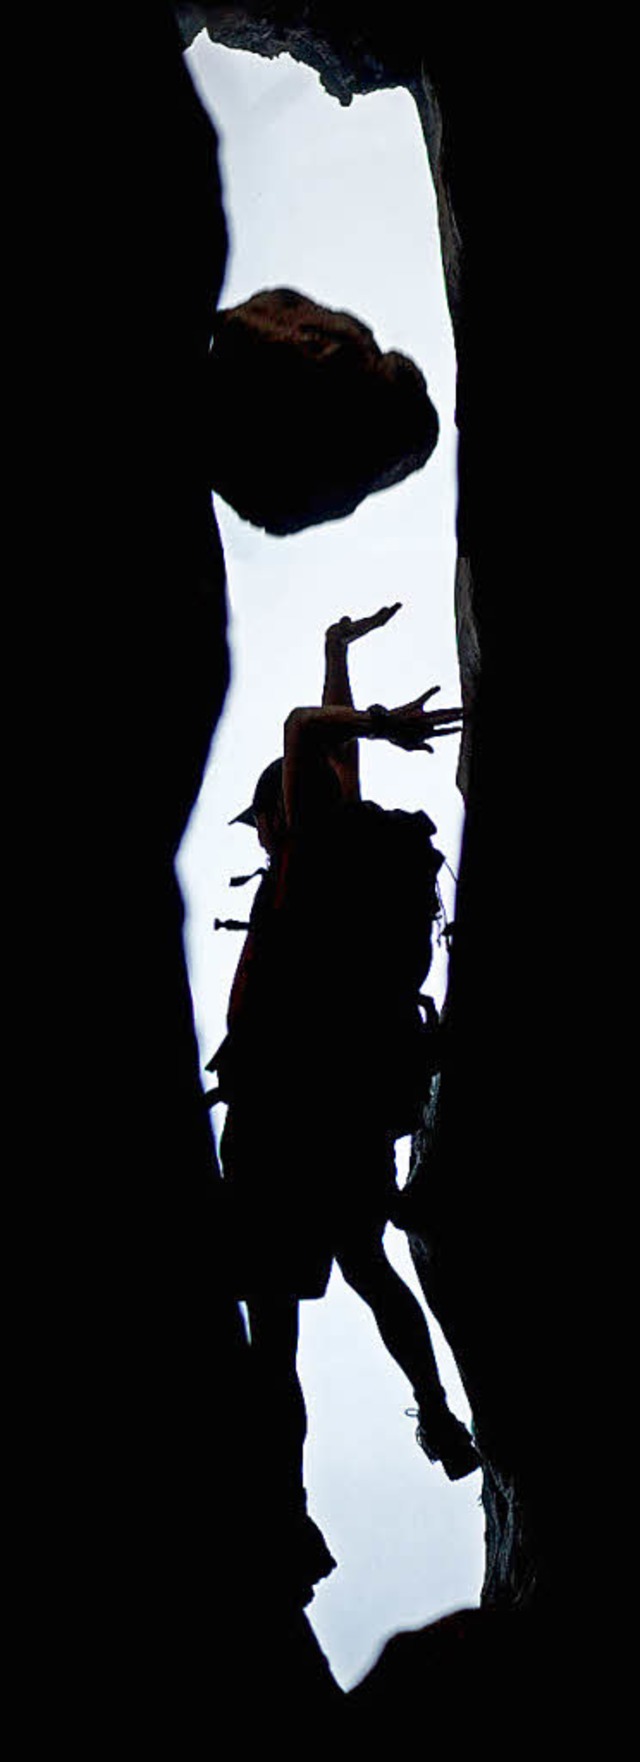 Der Sturz im Felsspalt: James Franco als Aron Ralston   | Foto: fox